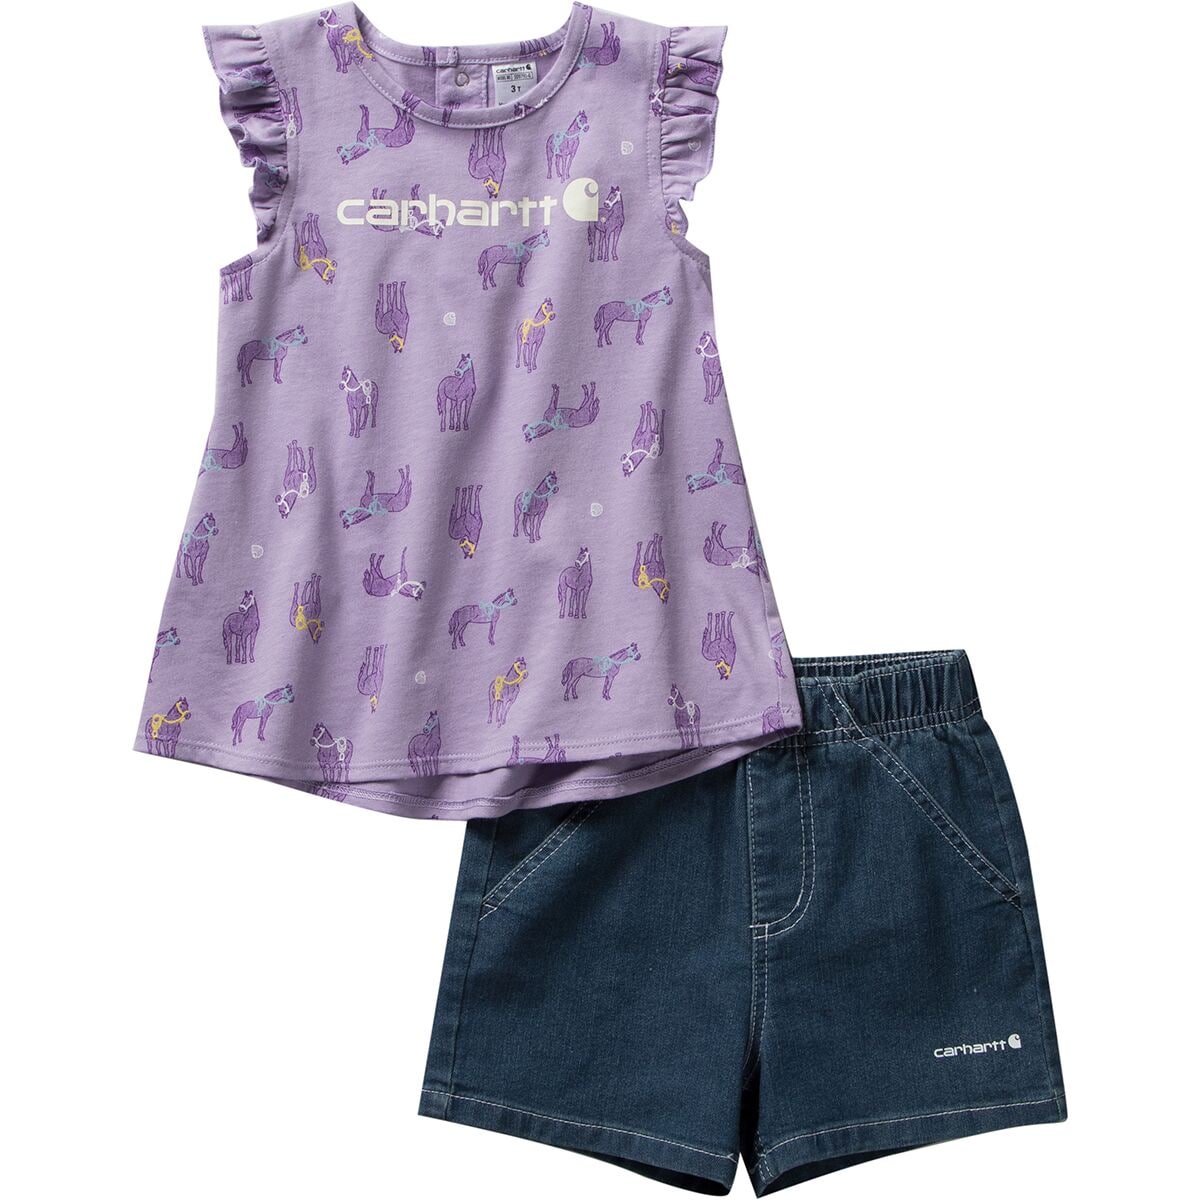 Carhartt Horse Print SS T-Shirt & Denim Short Set - Toddler Girls'